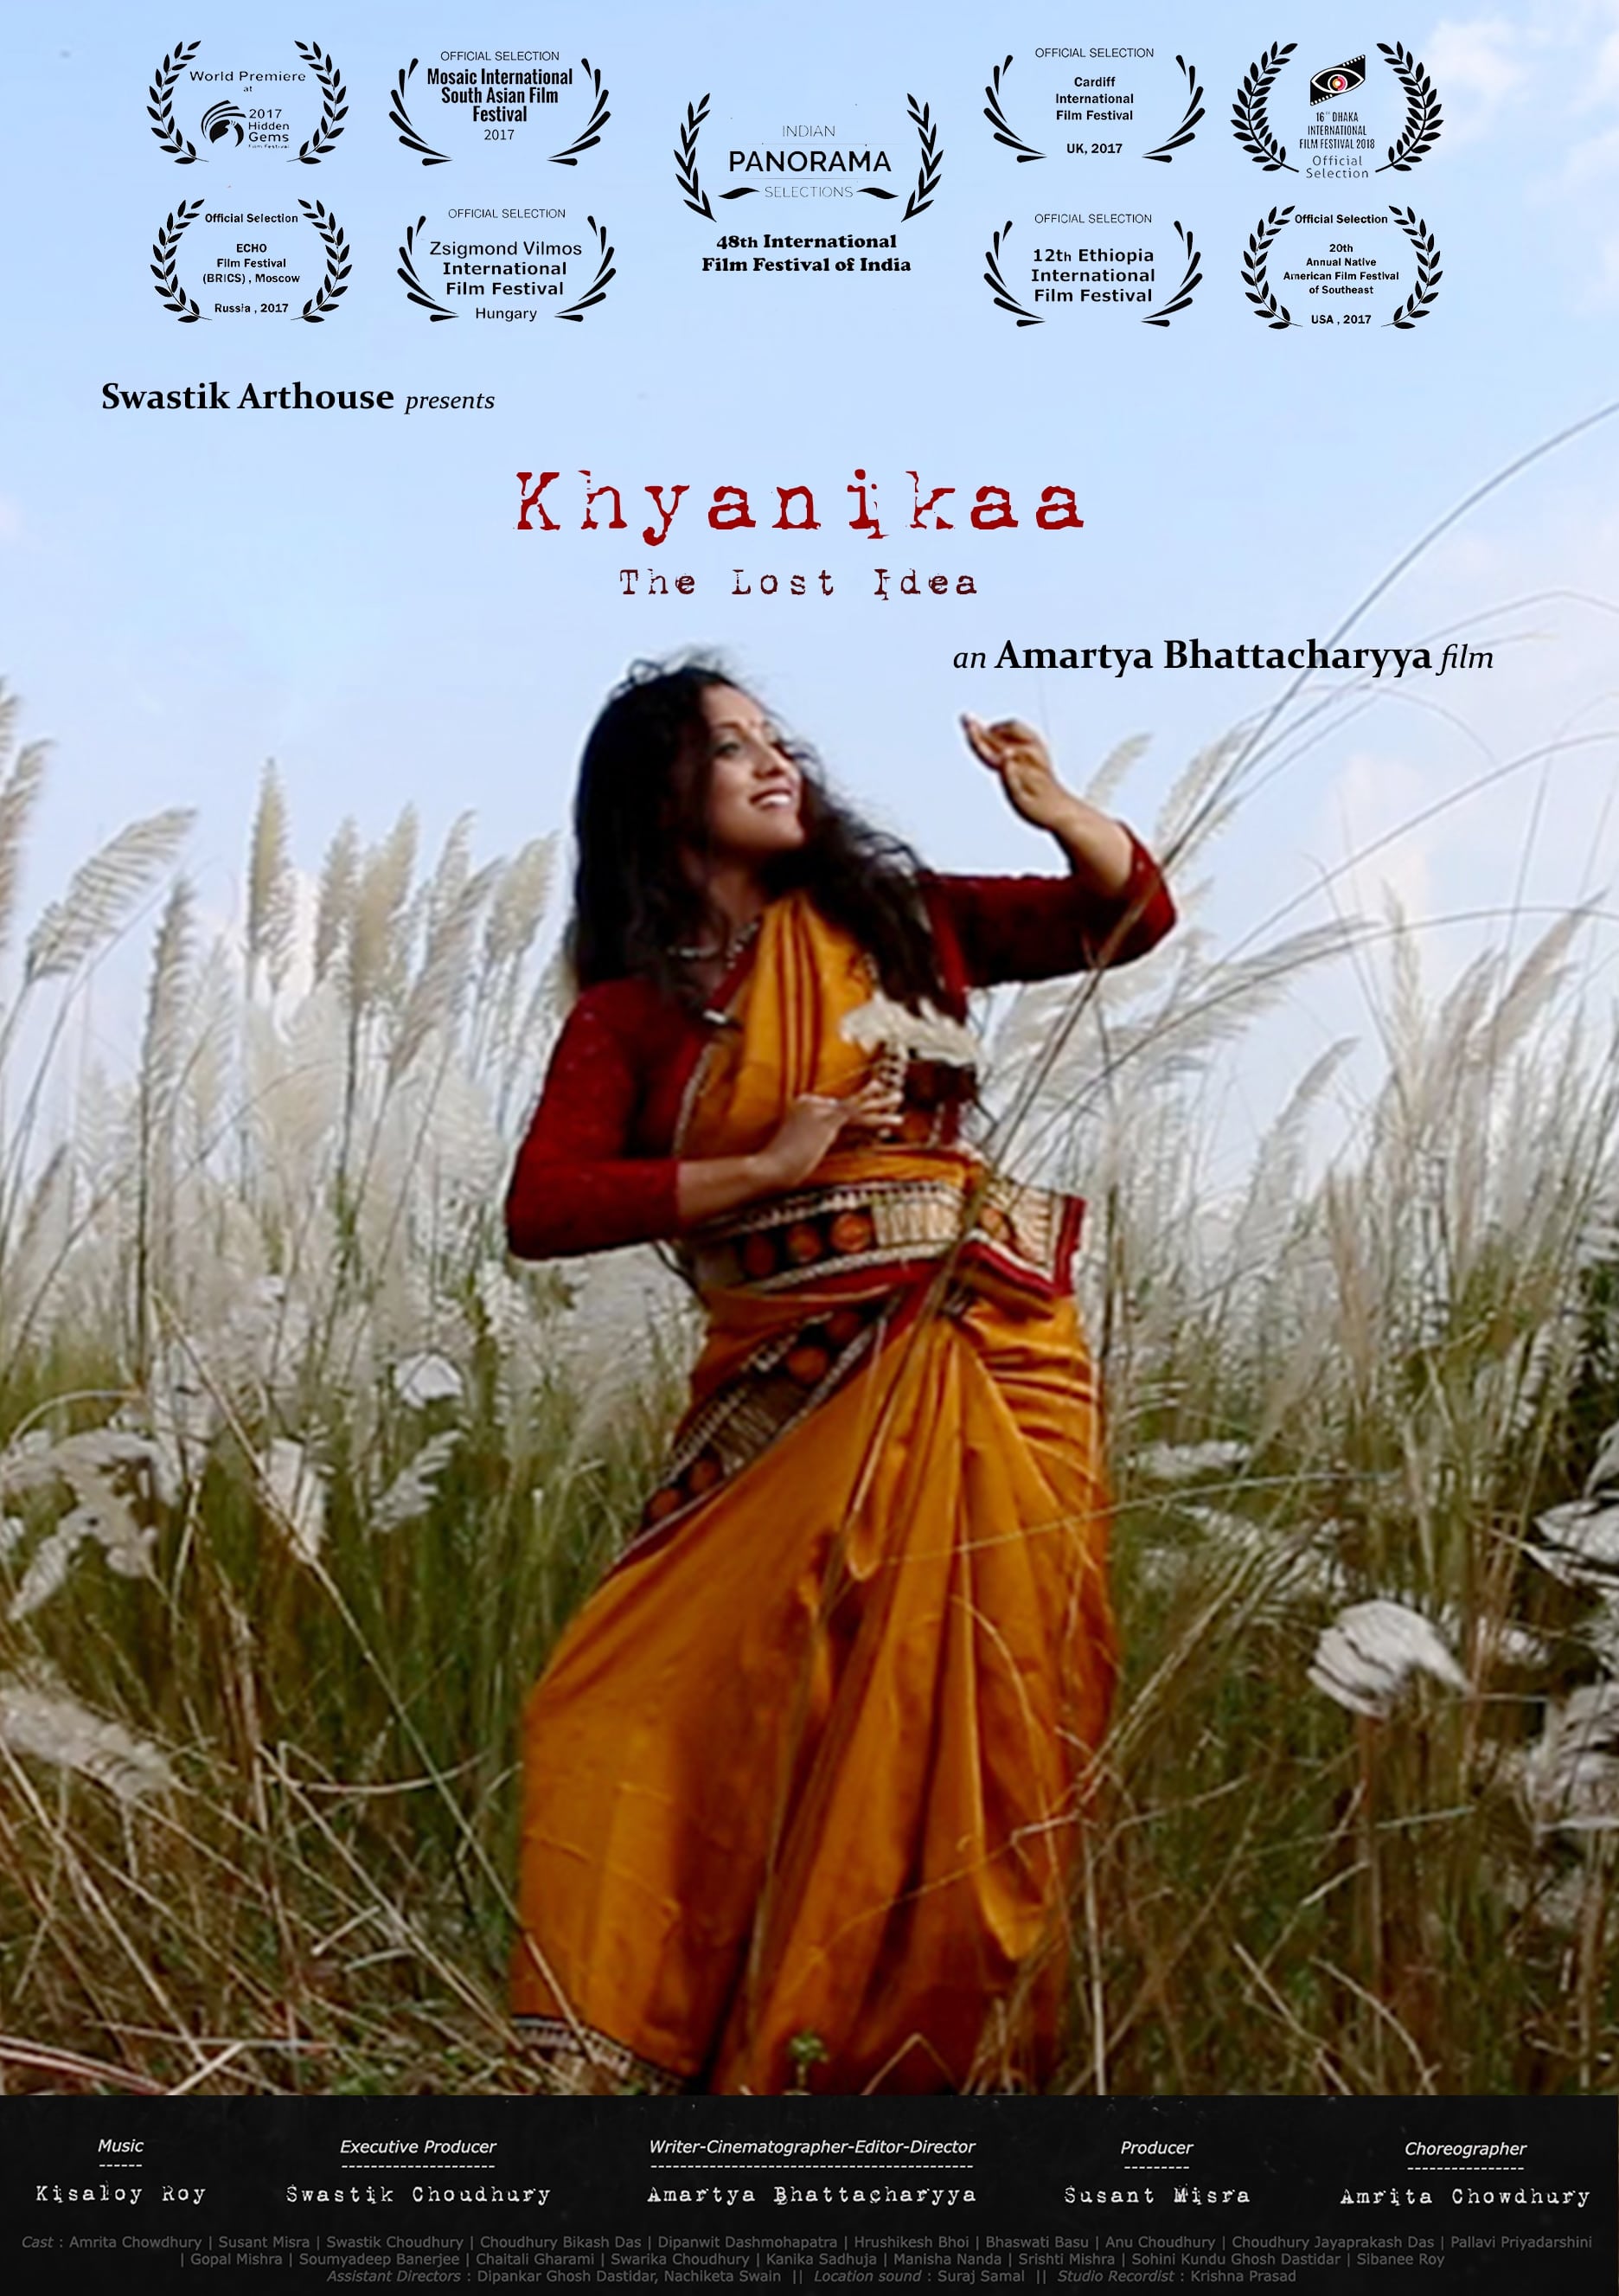 Khyanikaa: The Lost Idea